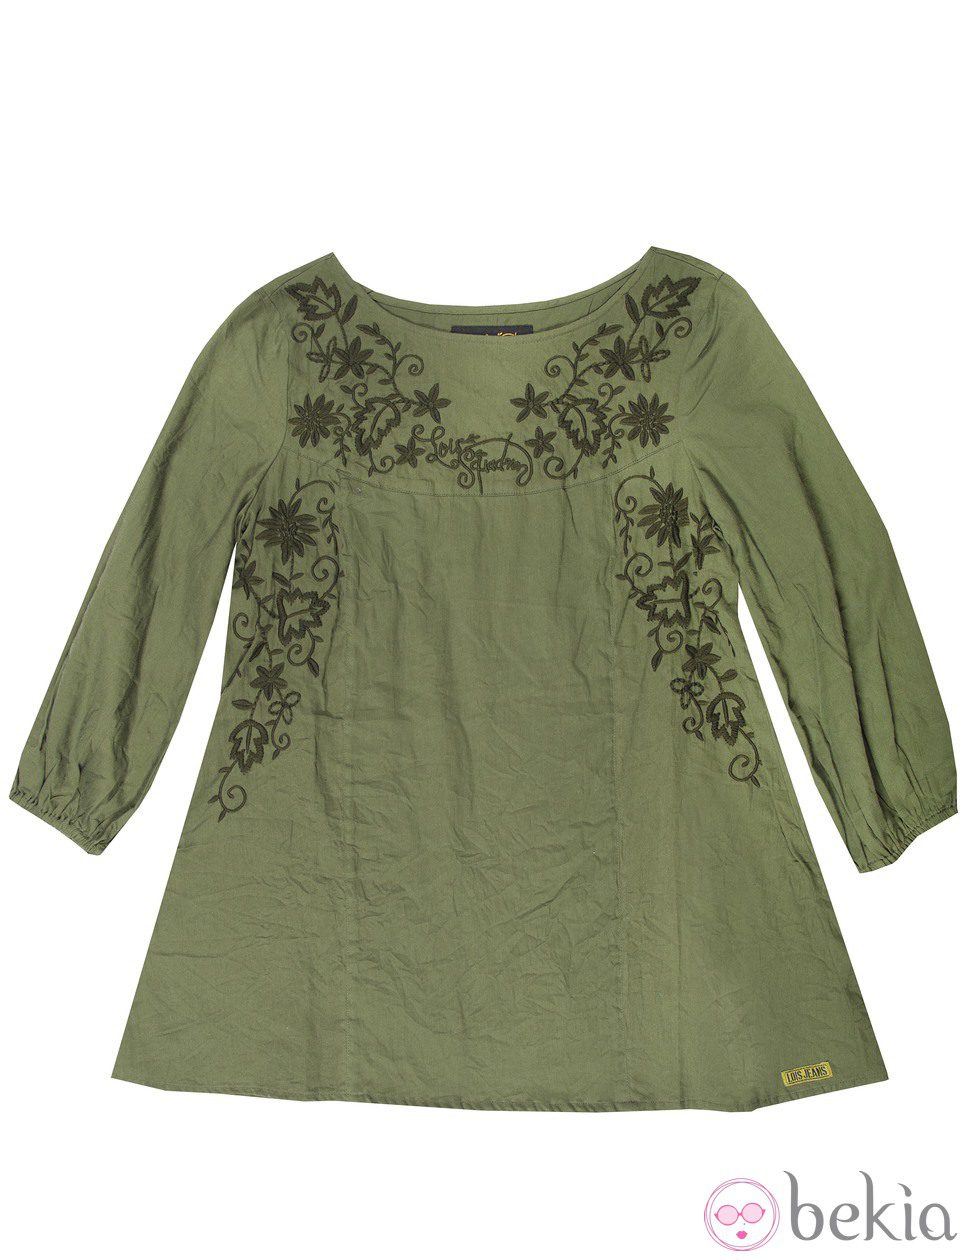 Camisa con bordado floral de la colección otoño/invierno 2014/2015 de Lois